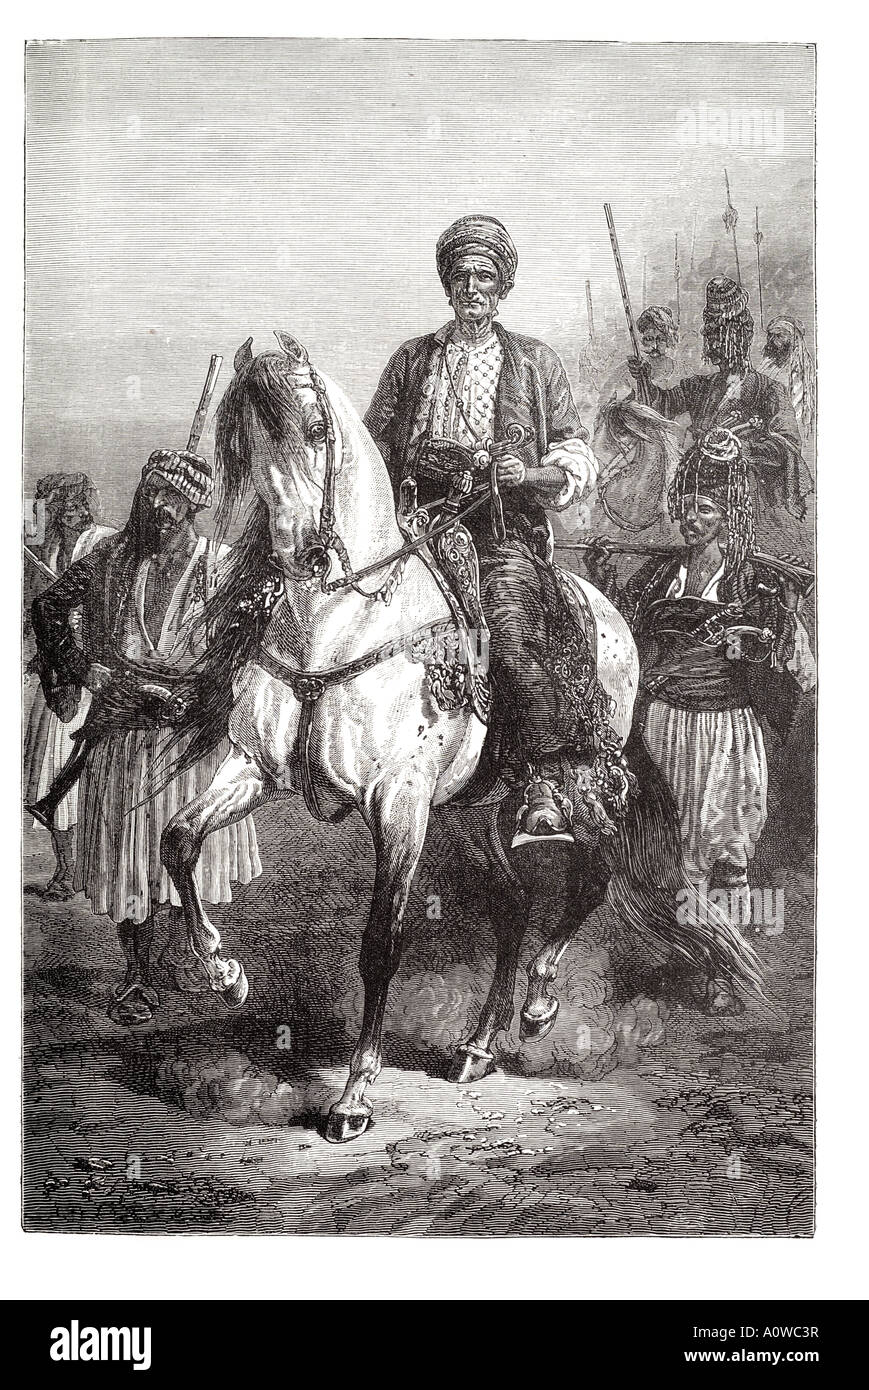 Kara Fatima kurdischen königliche Prinzessin königliche Monarchie Persien Asien Pferd Frau Fahrt Hengst Wache Prozession Kavallerie satteln Kostüm Stockfoto